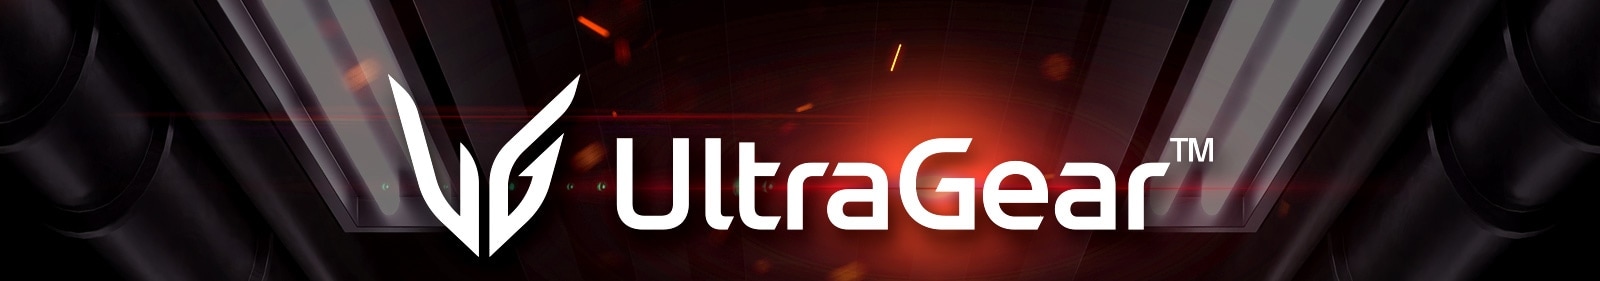 LG UltraGear Logo.